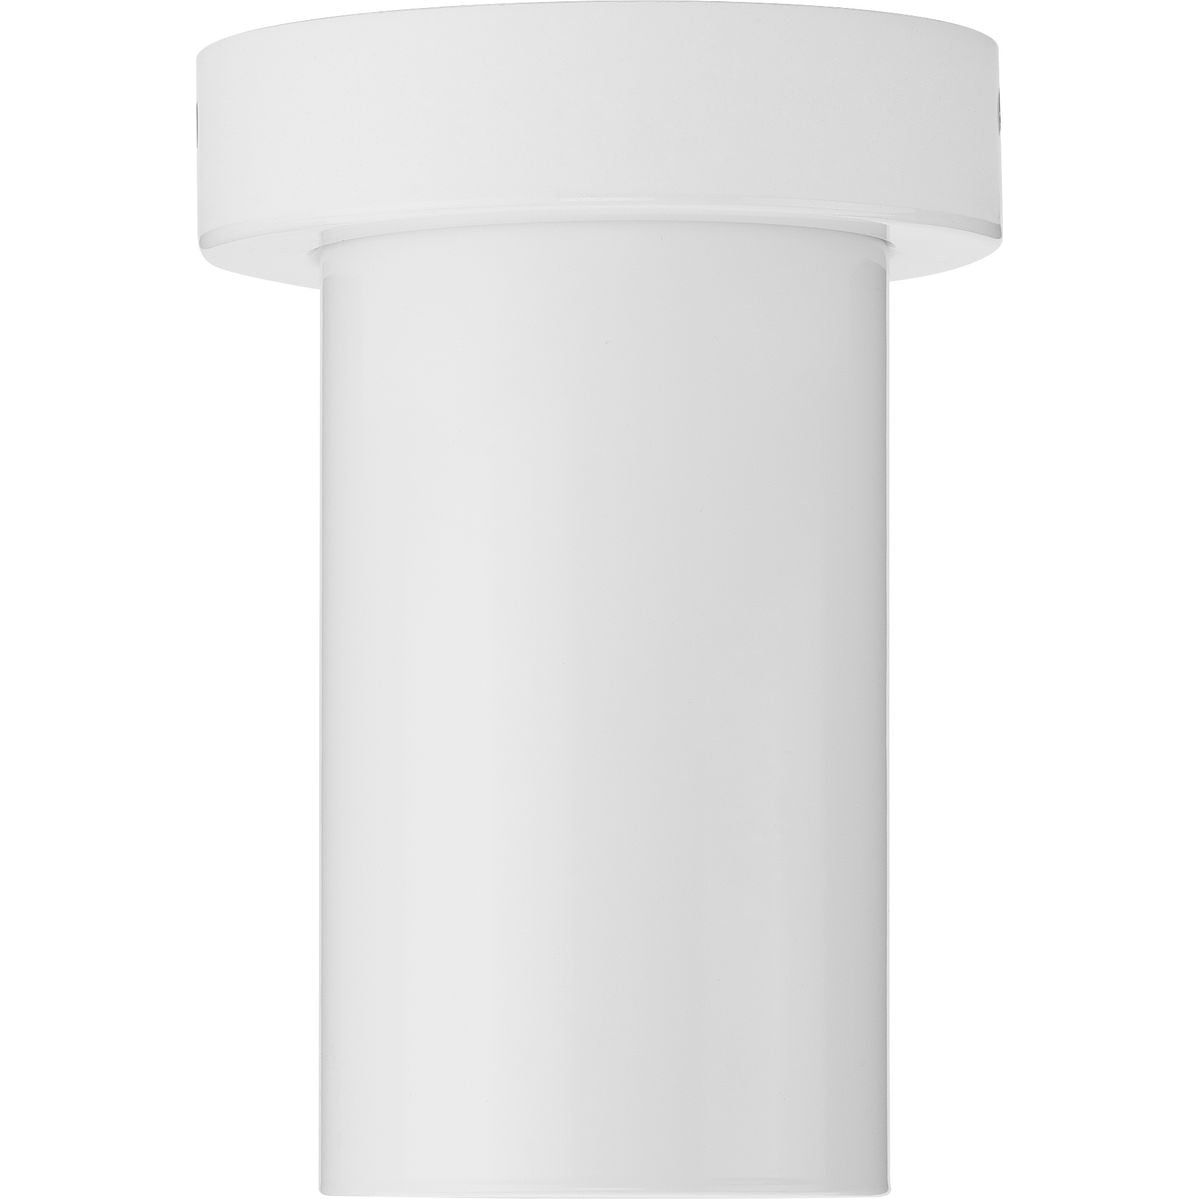 3" 1-Light Surface Mount Cylinder